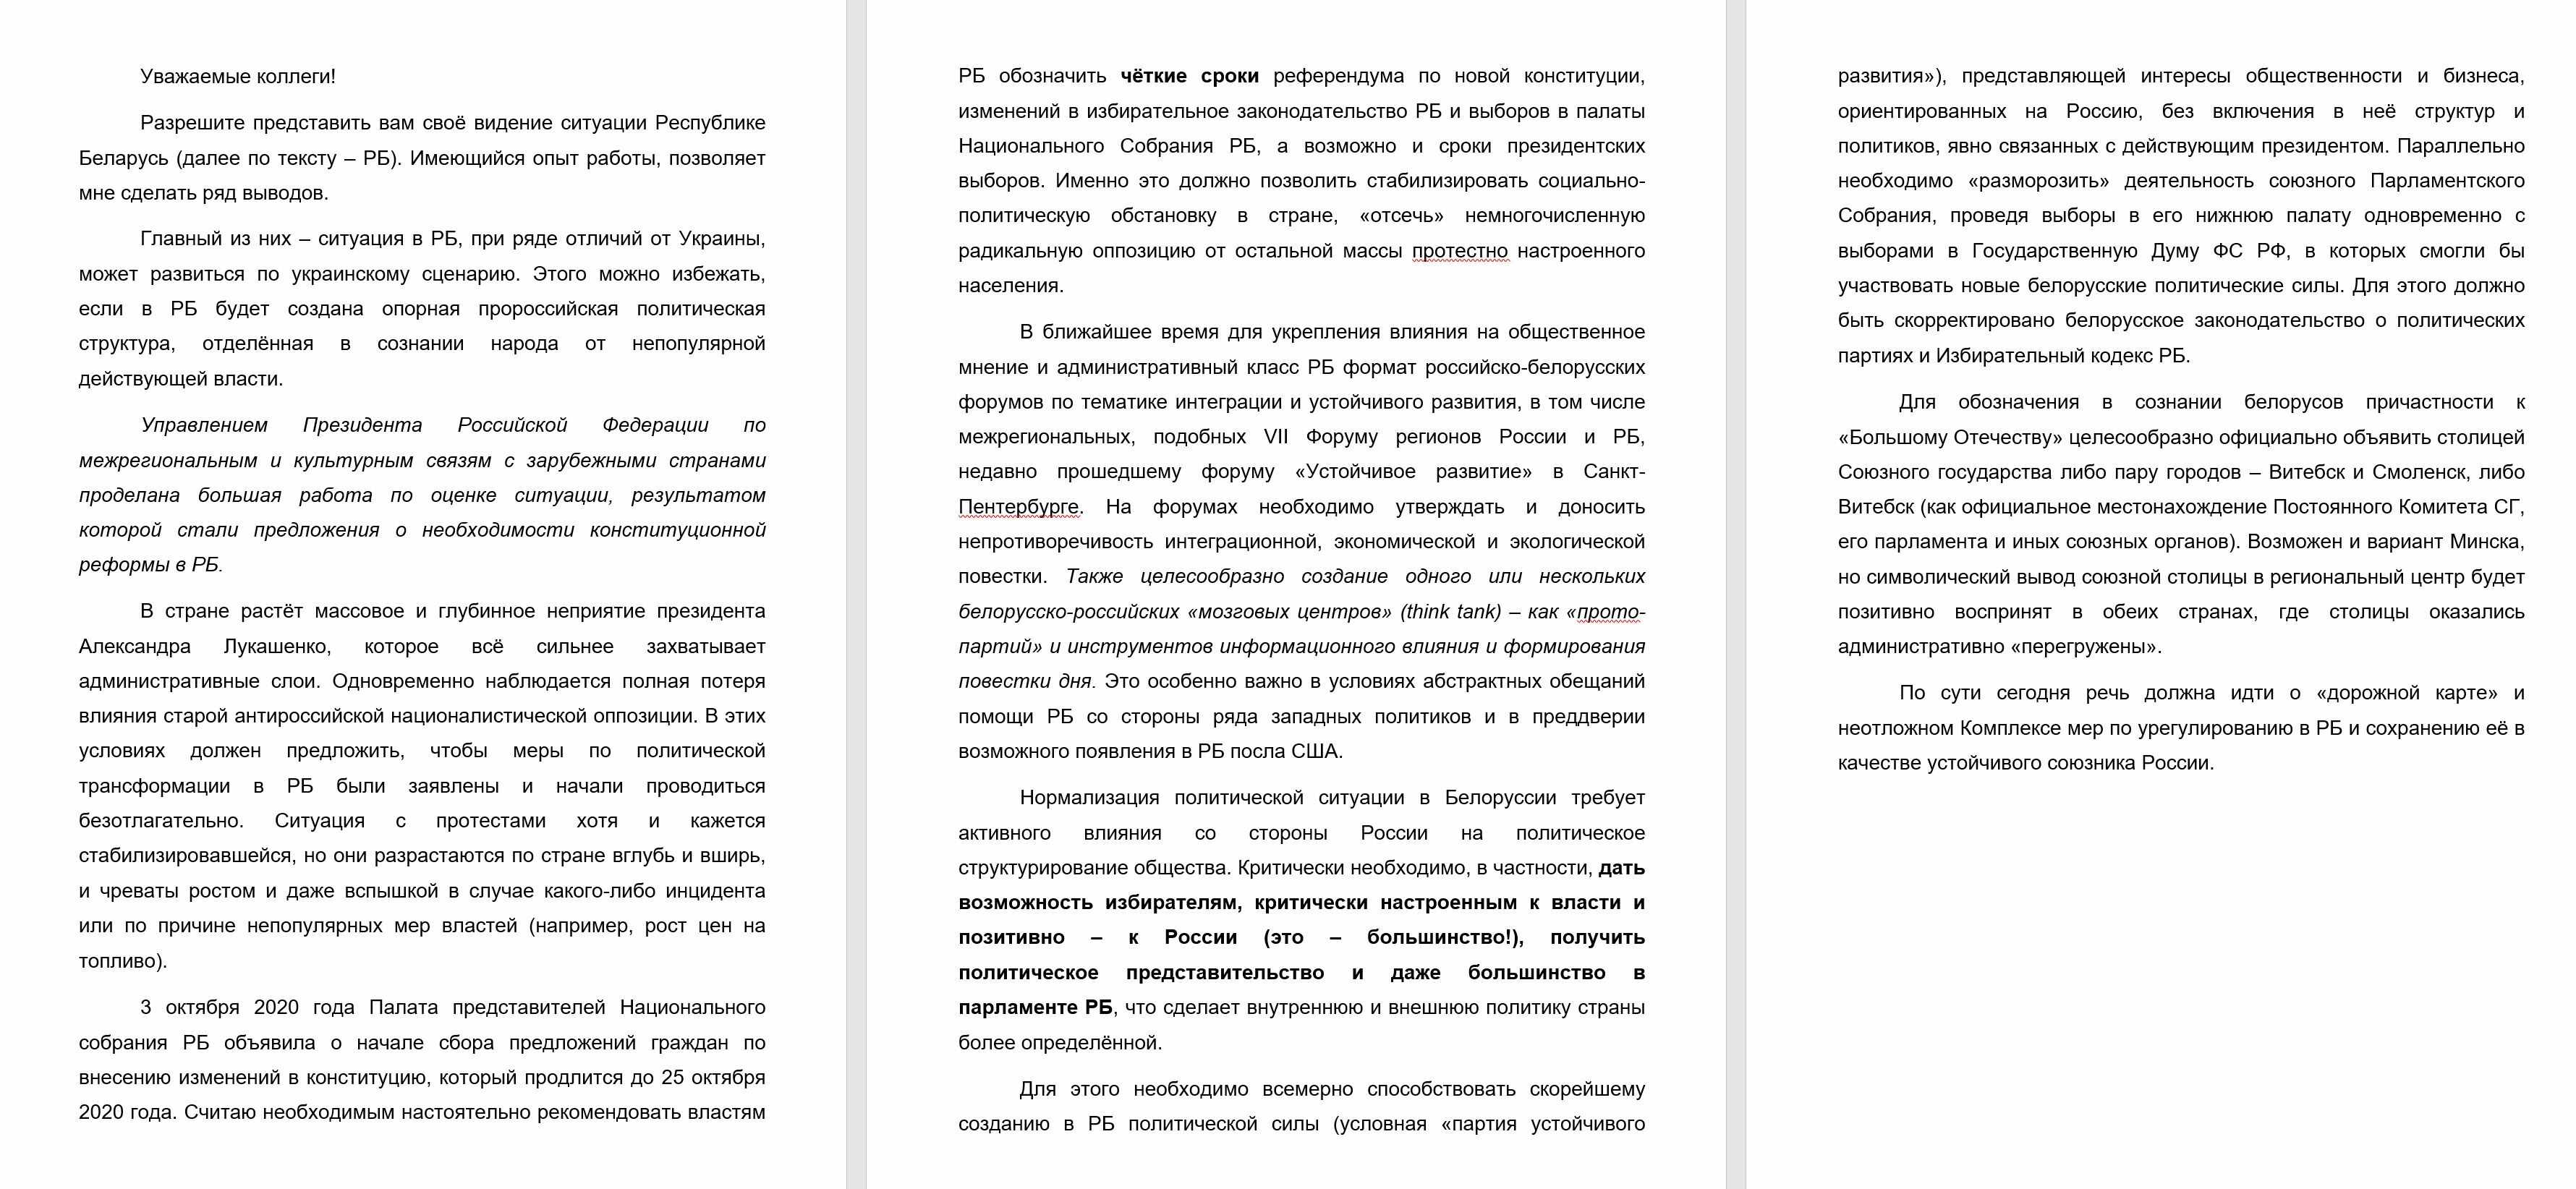 	Изменение конституции и контроль парламента: СМИ узнали планы РФ в отношении Беларуси